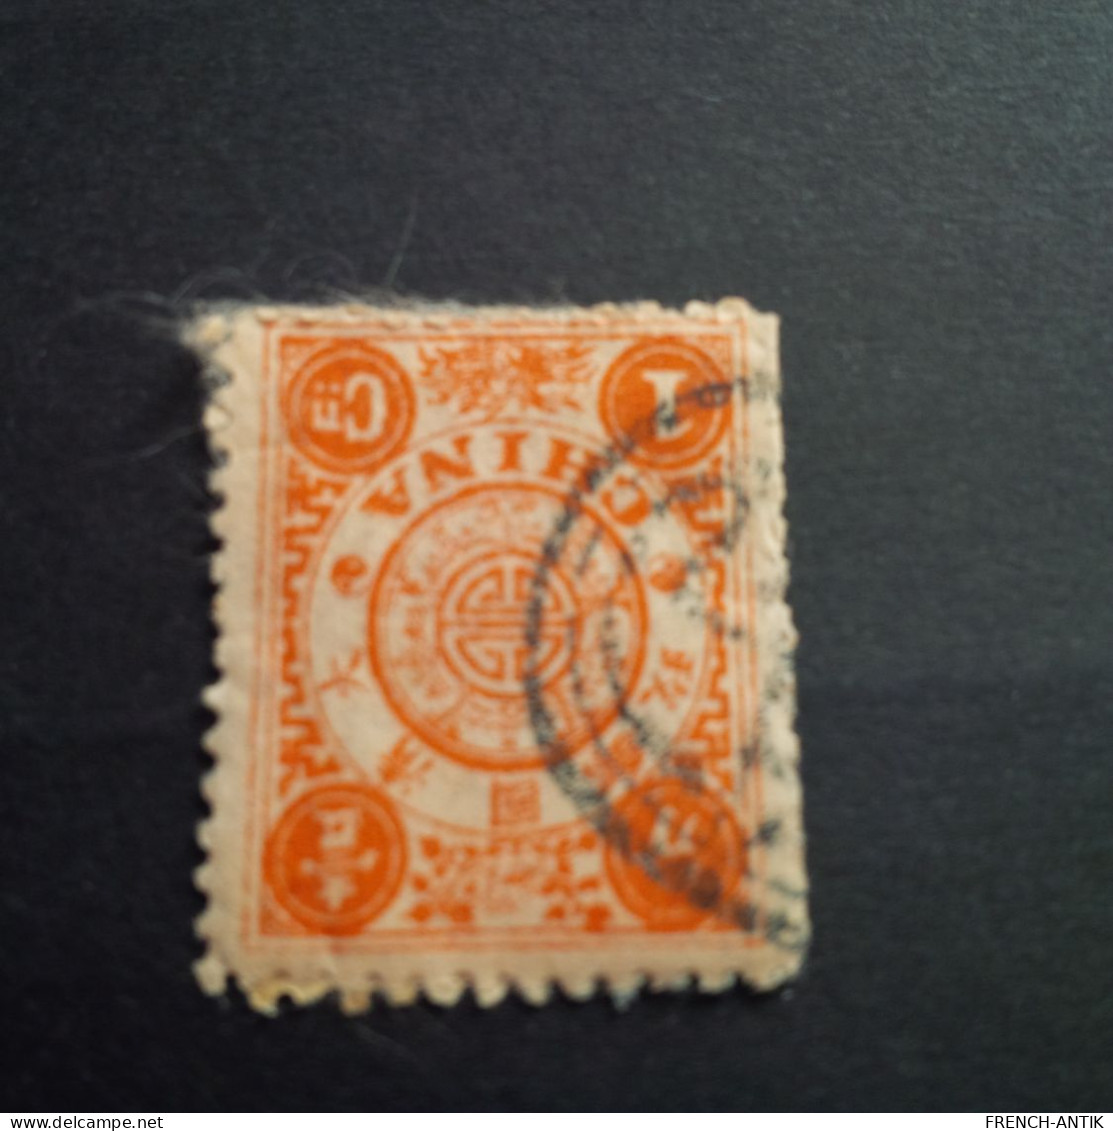 TIMBRE CANDARIN 1C 2 TIMBRE COLLER L UN SUR L AUTRE AVEC CACHET NOIR - Used Stamps